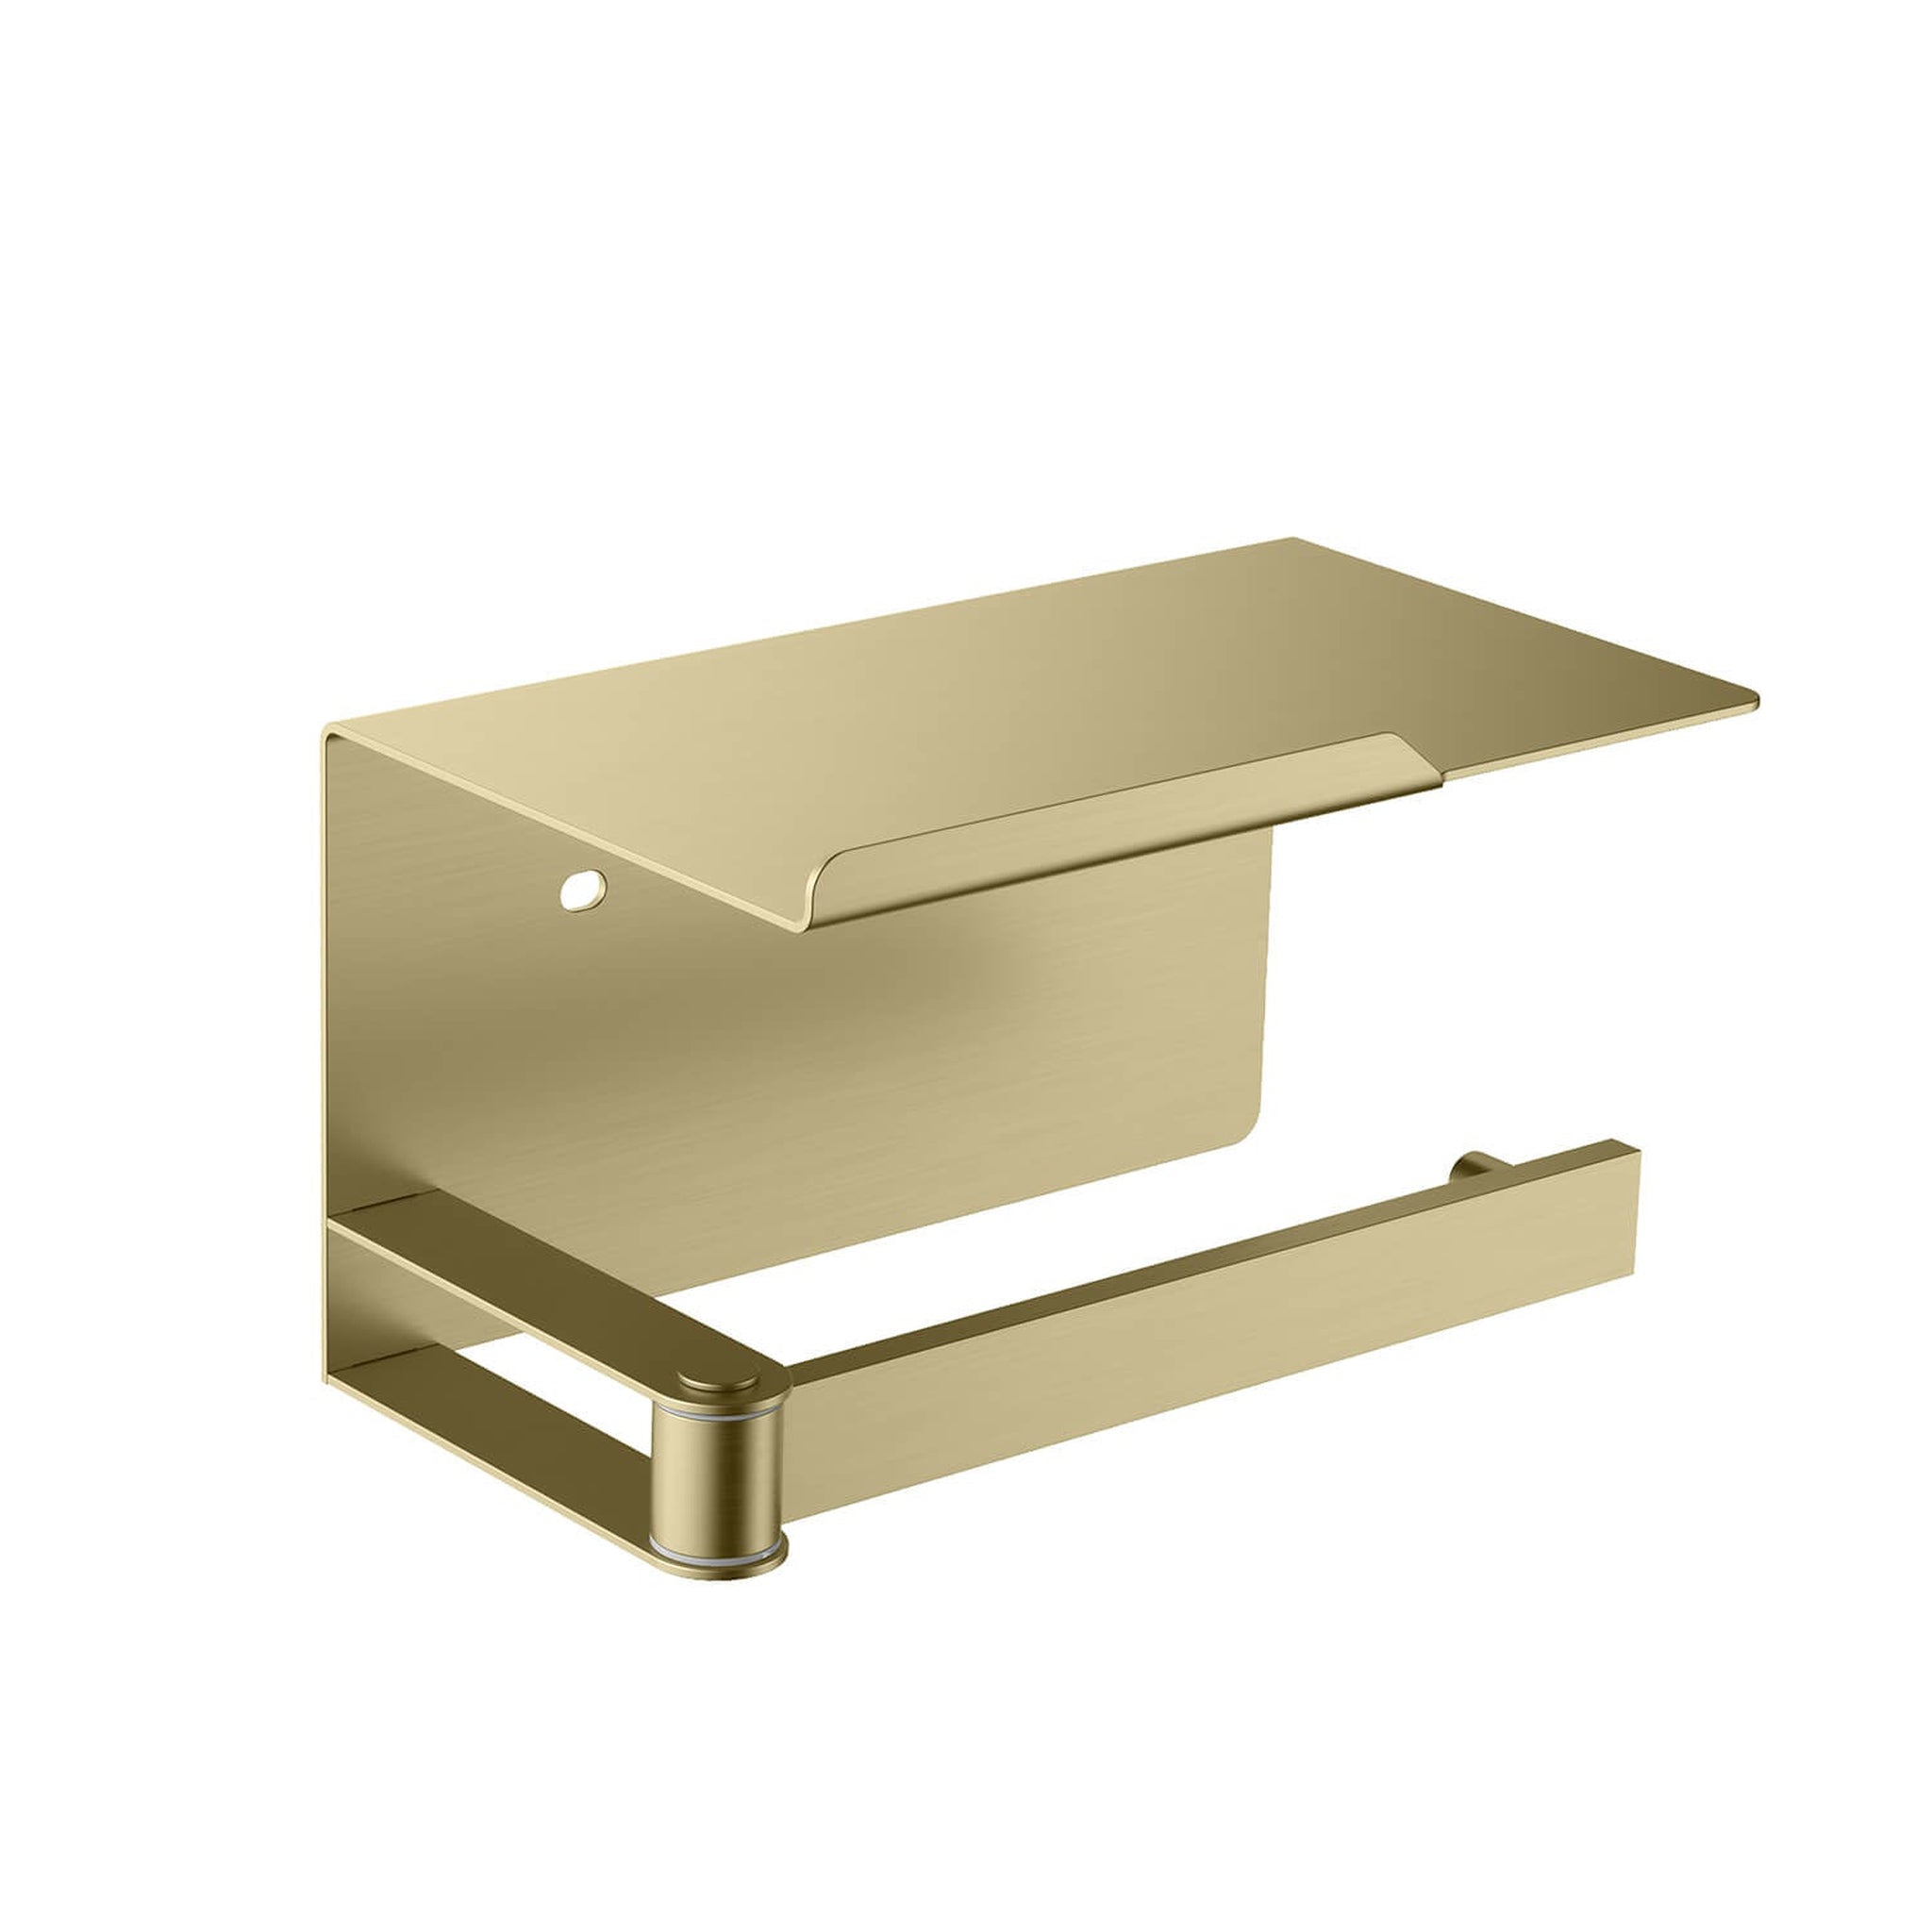 KIBI, KIBI Deco Bathroom Toilet Paper Holder With Platform in Brushed Gold Finish